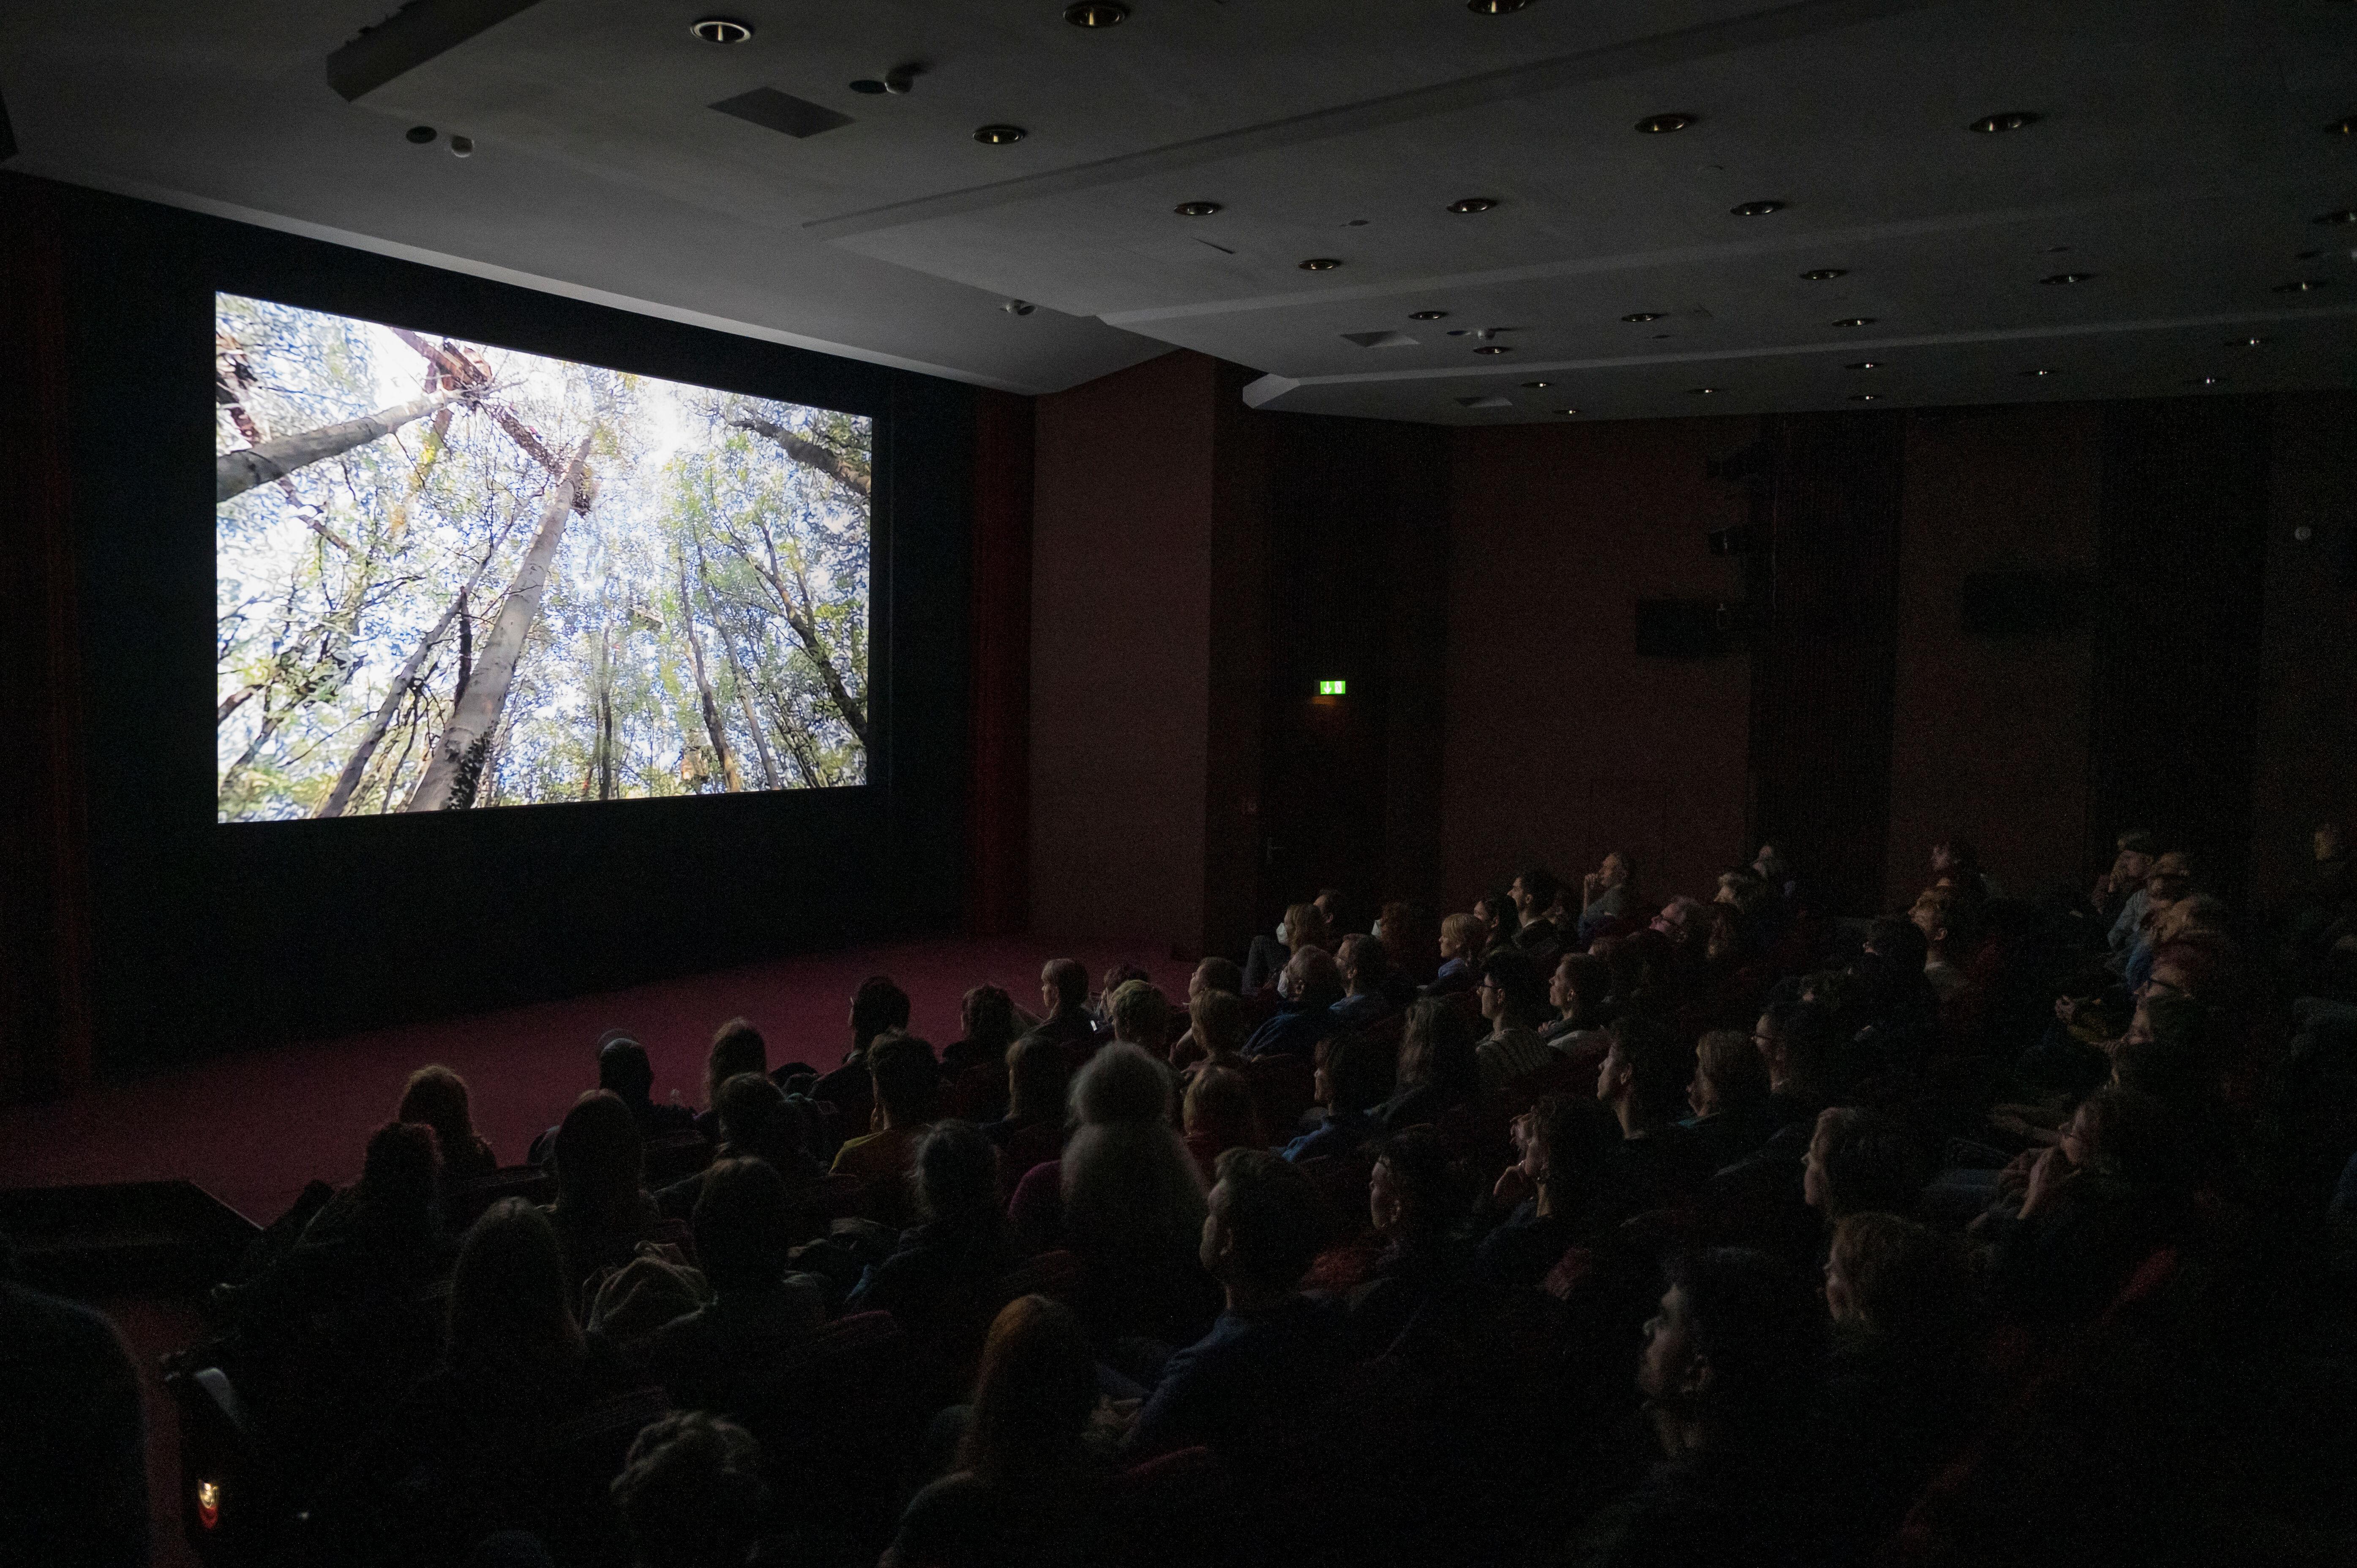 Der Kinosaal im Zeiss-Großplanetarium mit Publikum. Auf der Leinwand ist der Film "Vergiss Meyn Nicht" zu sehen.